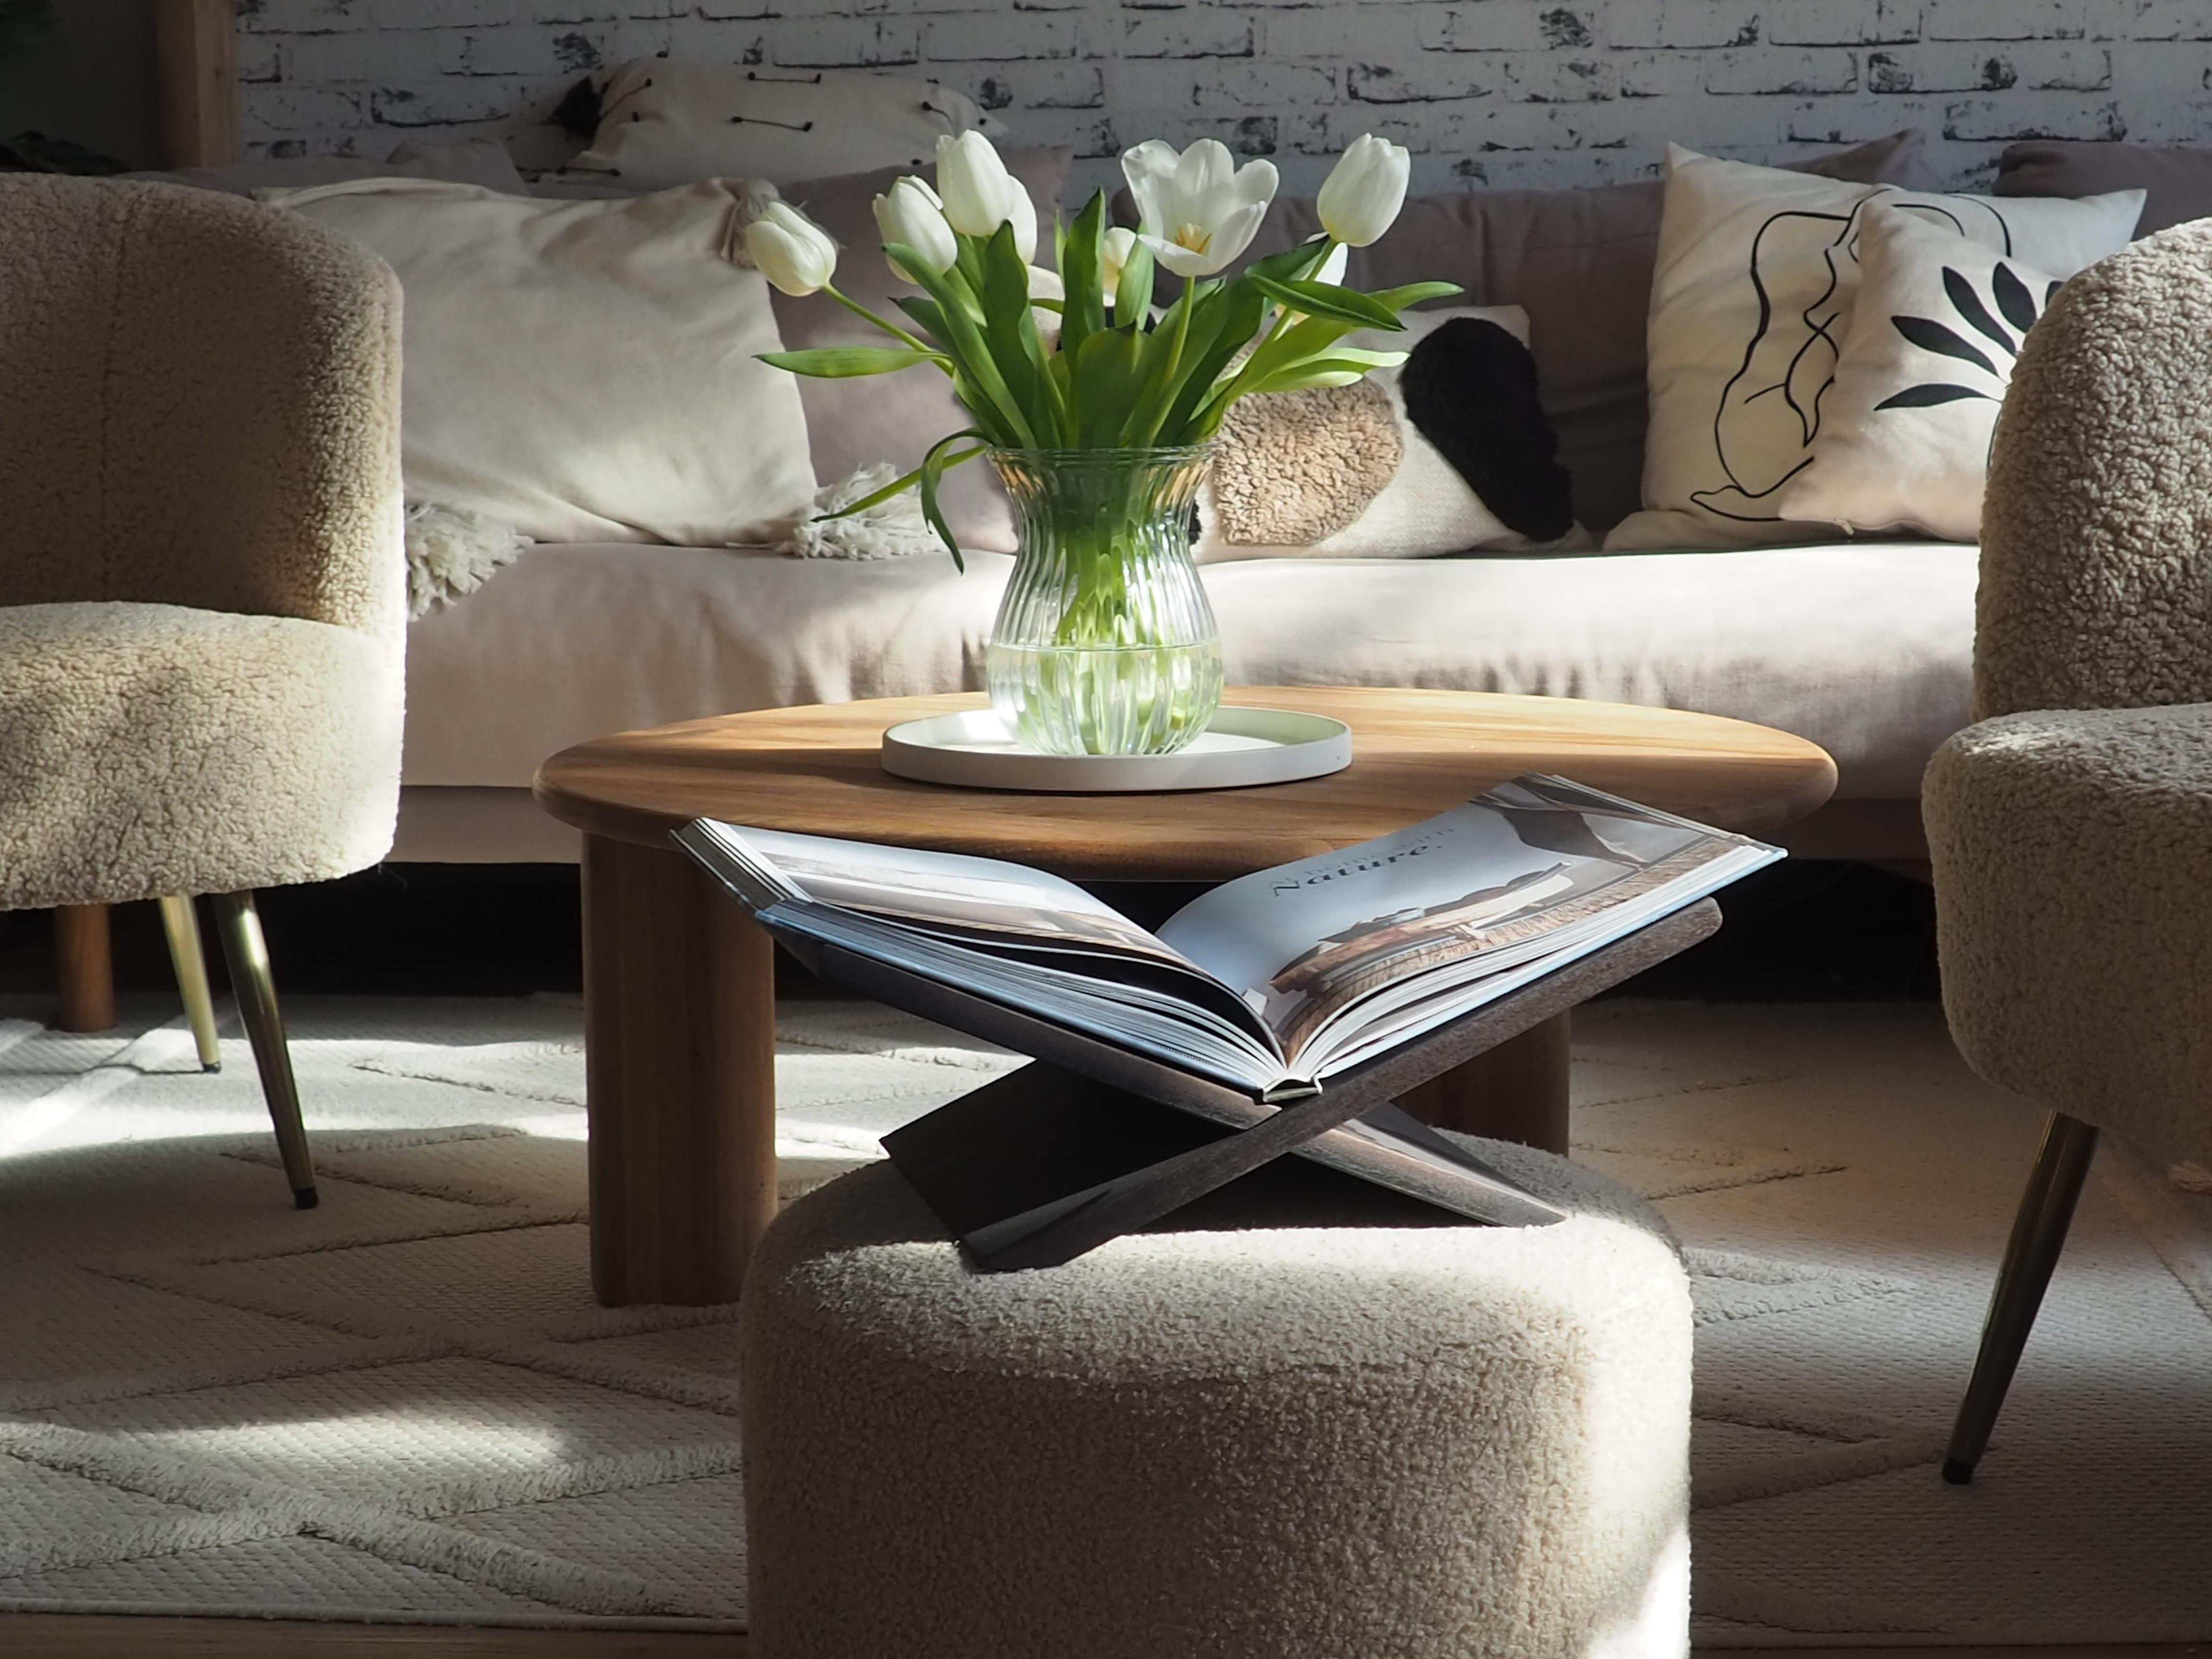 Happy Sunday!

#tulpen #wohnzimmer #couchstyle #sonnenschein #couch 